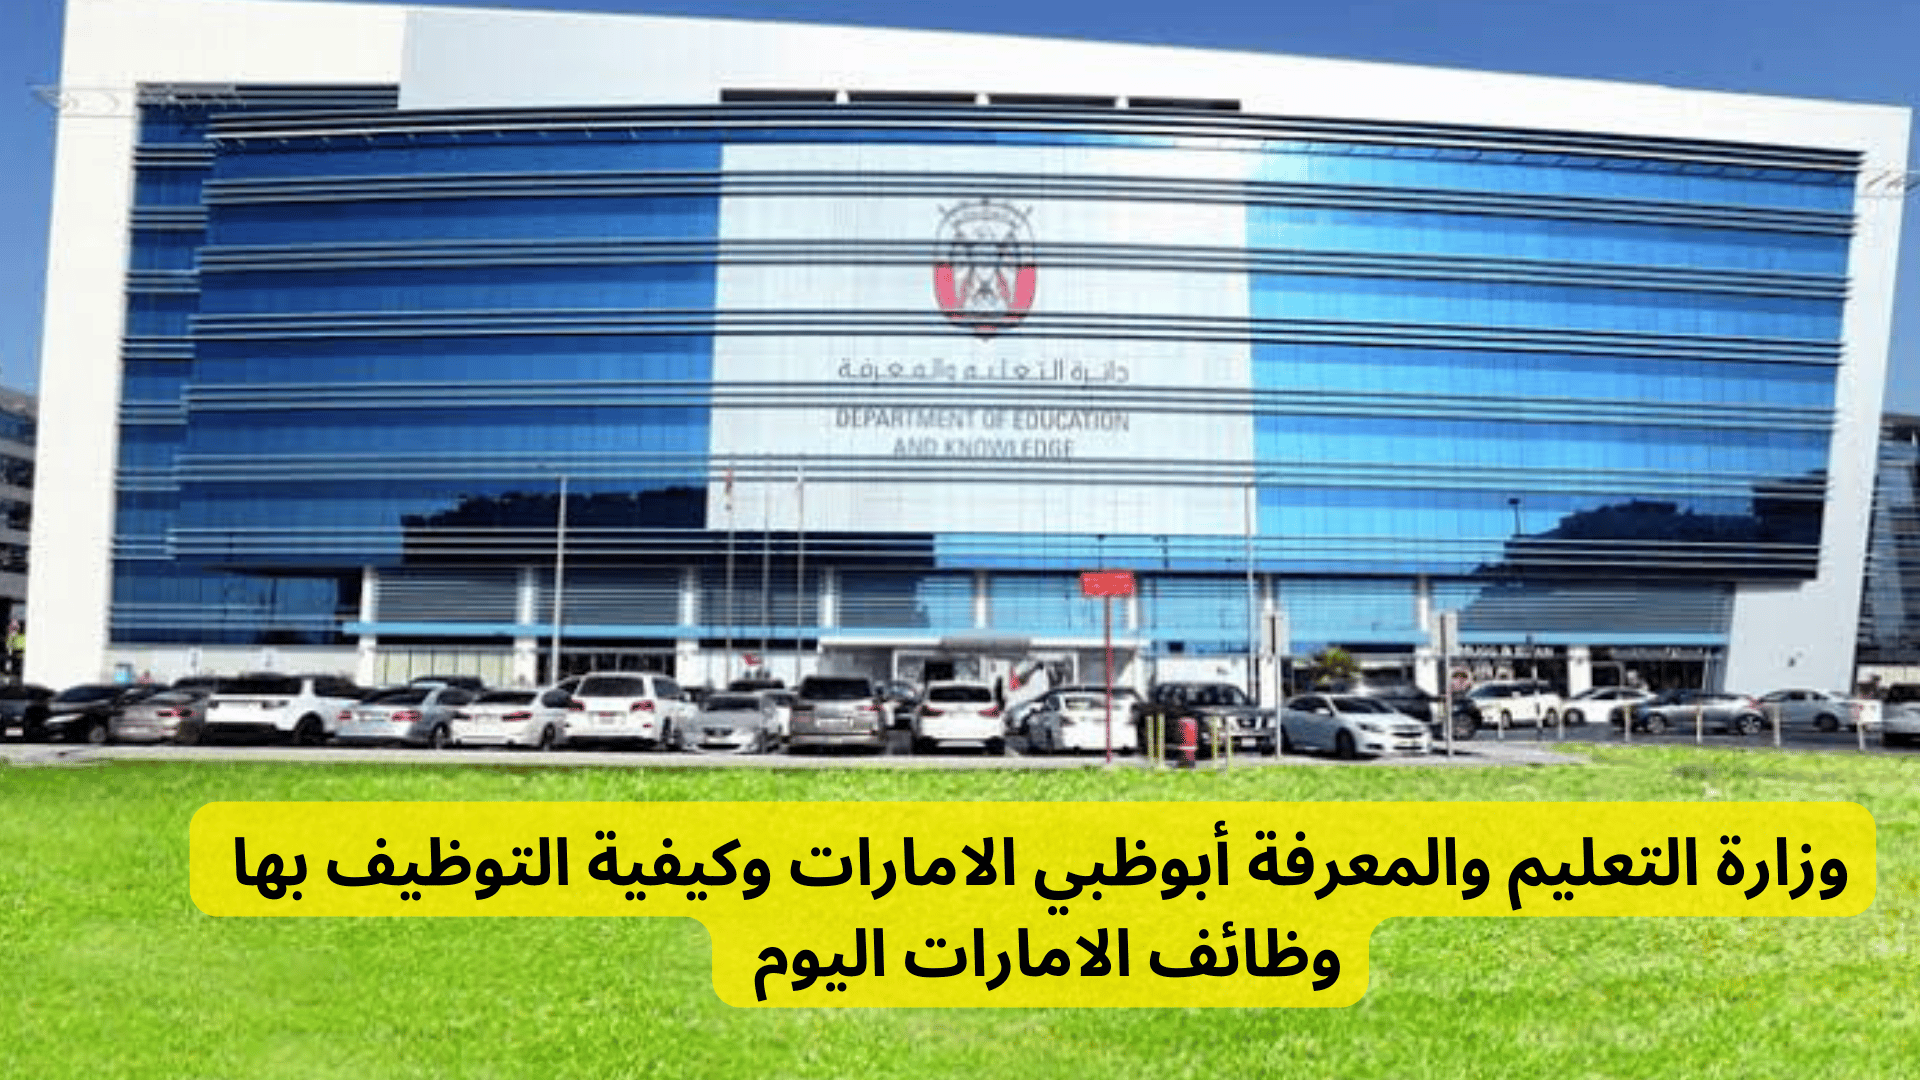 وزارة التعليم والمعرفة أبوظبي الامارات وكيفية التوظيف بها